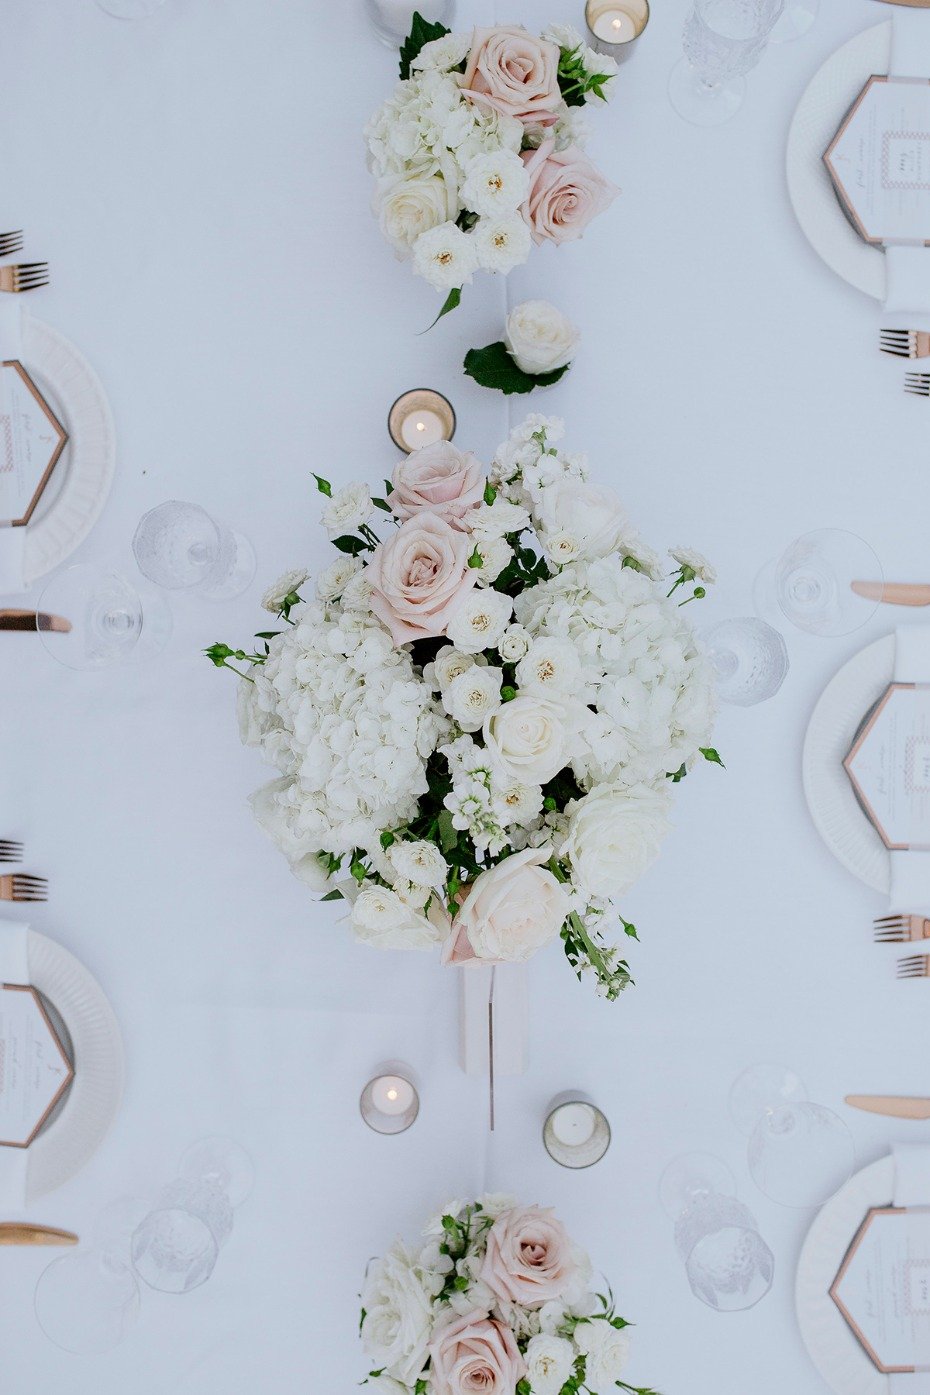 white and blush wedding centerpiece